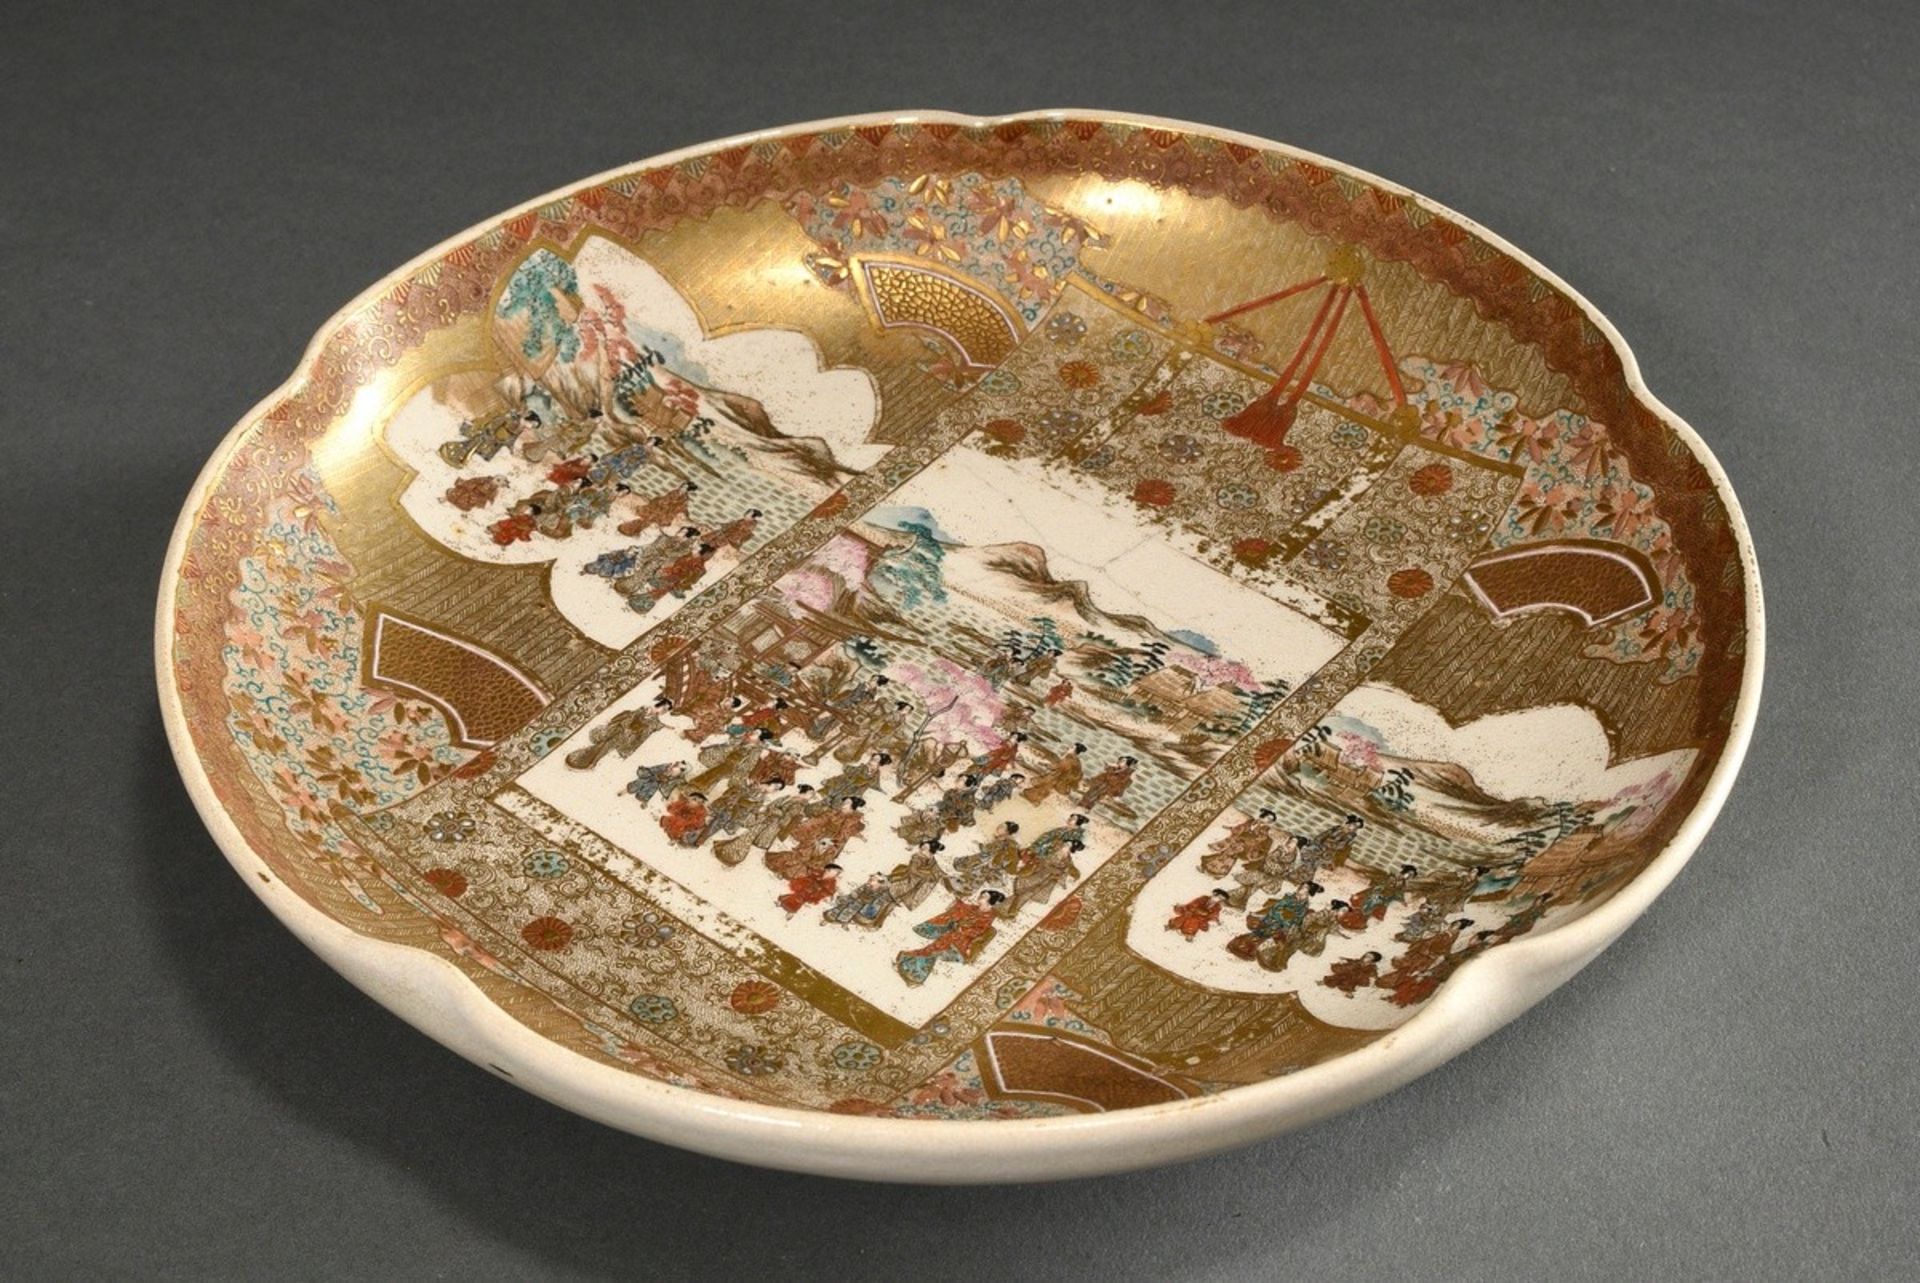 Satsuma Schale mit feinem Malerei Dekor im Spiegel "Kirschblütenfest" in blütenförmigen Kartuschen 